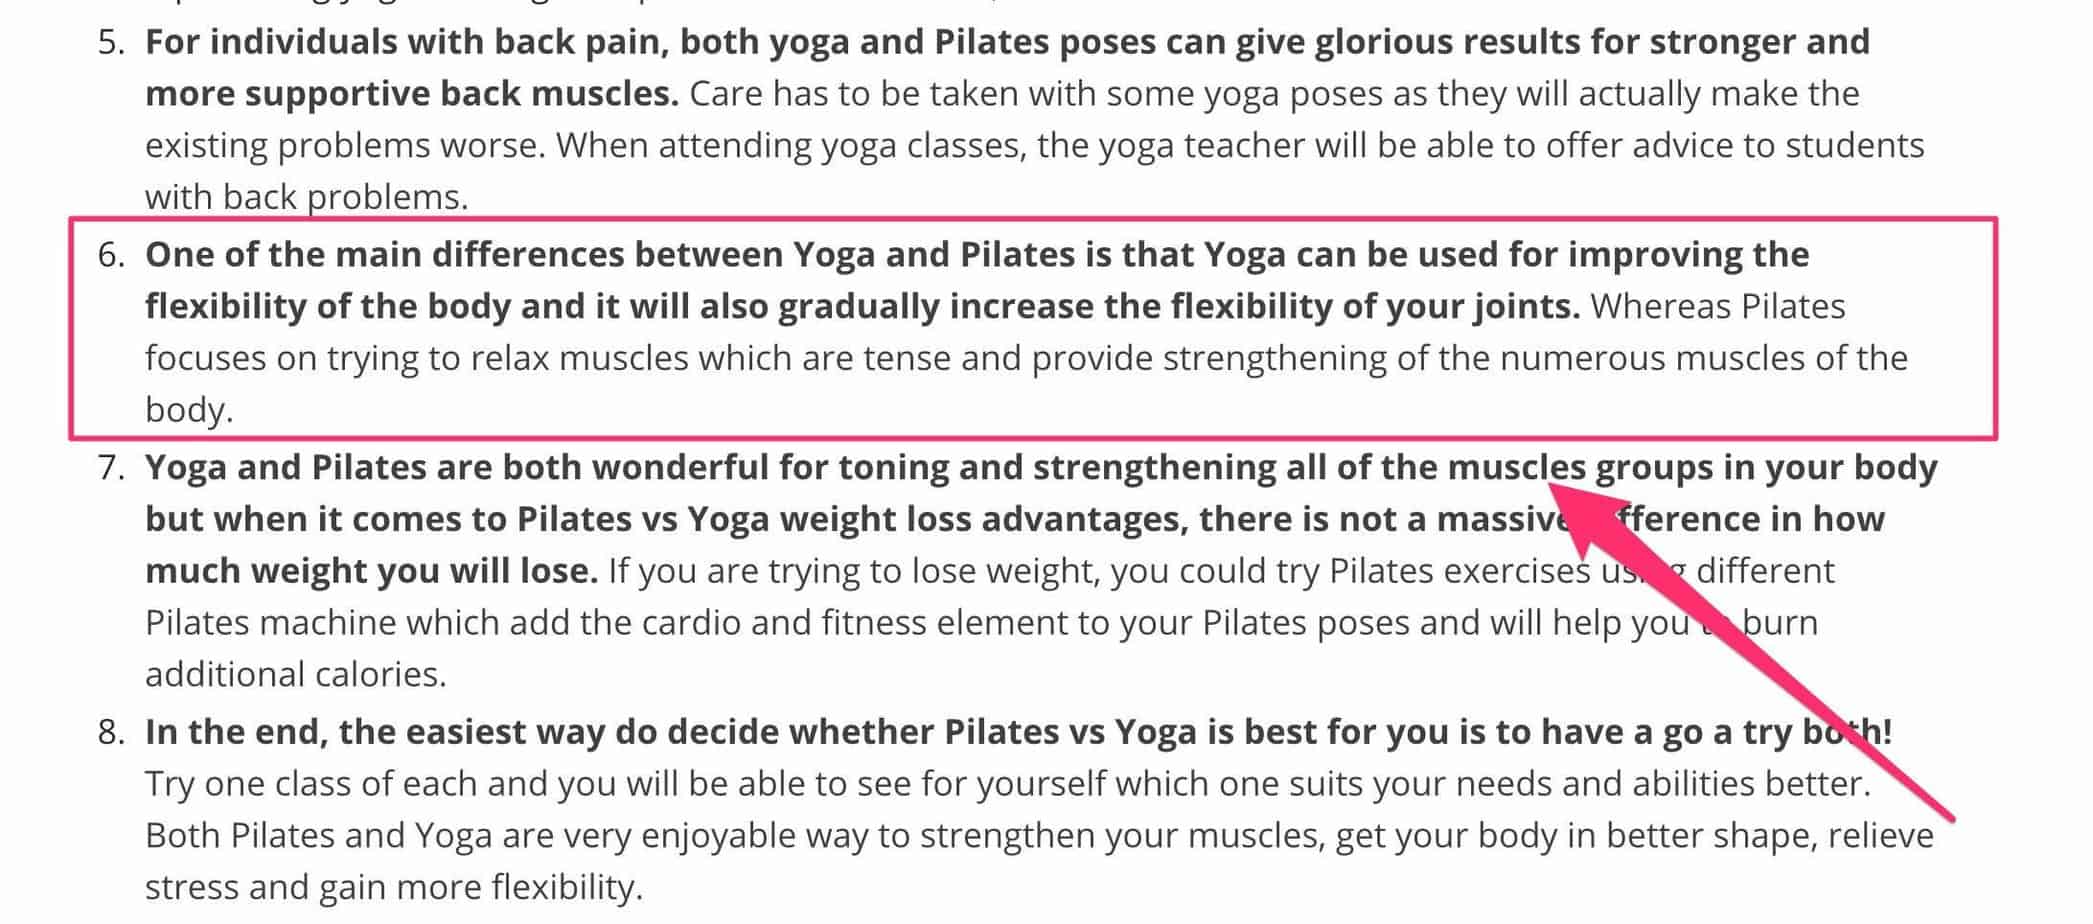 pilates vs yoa - analysis